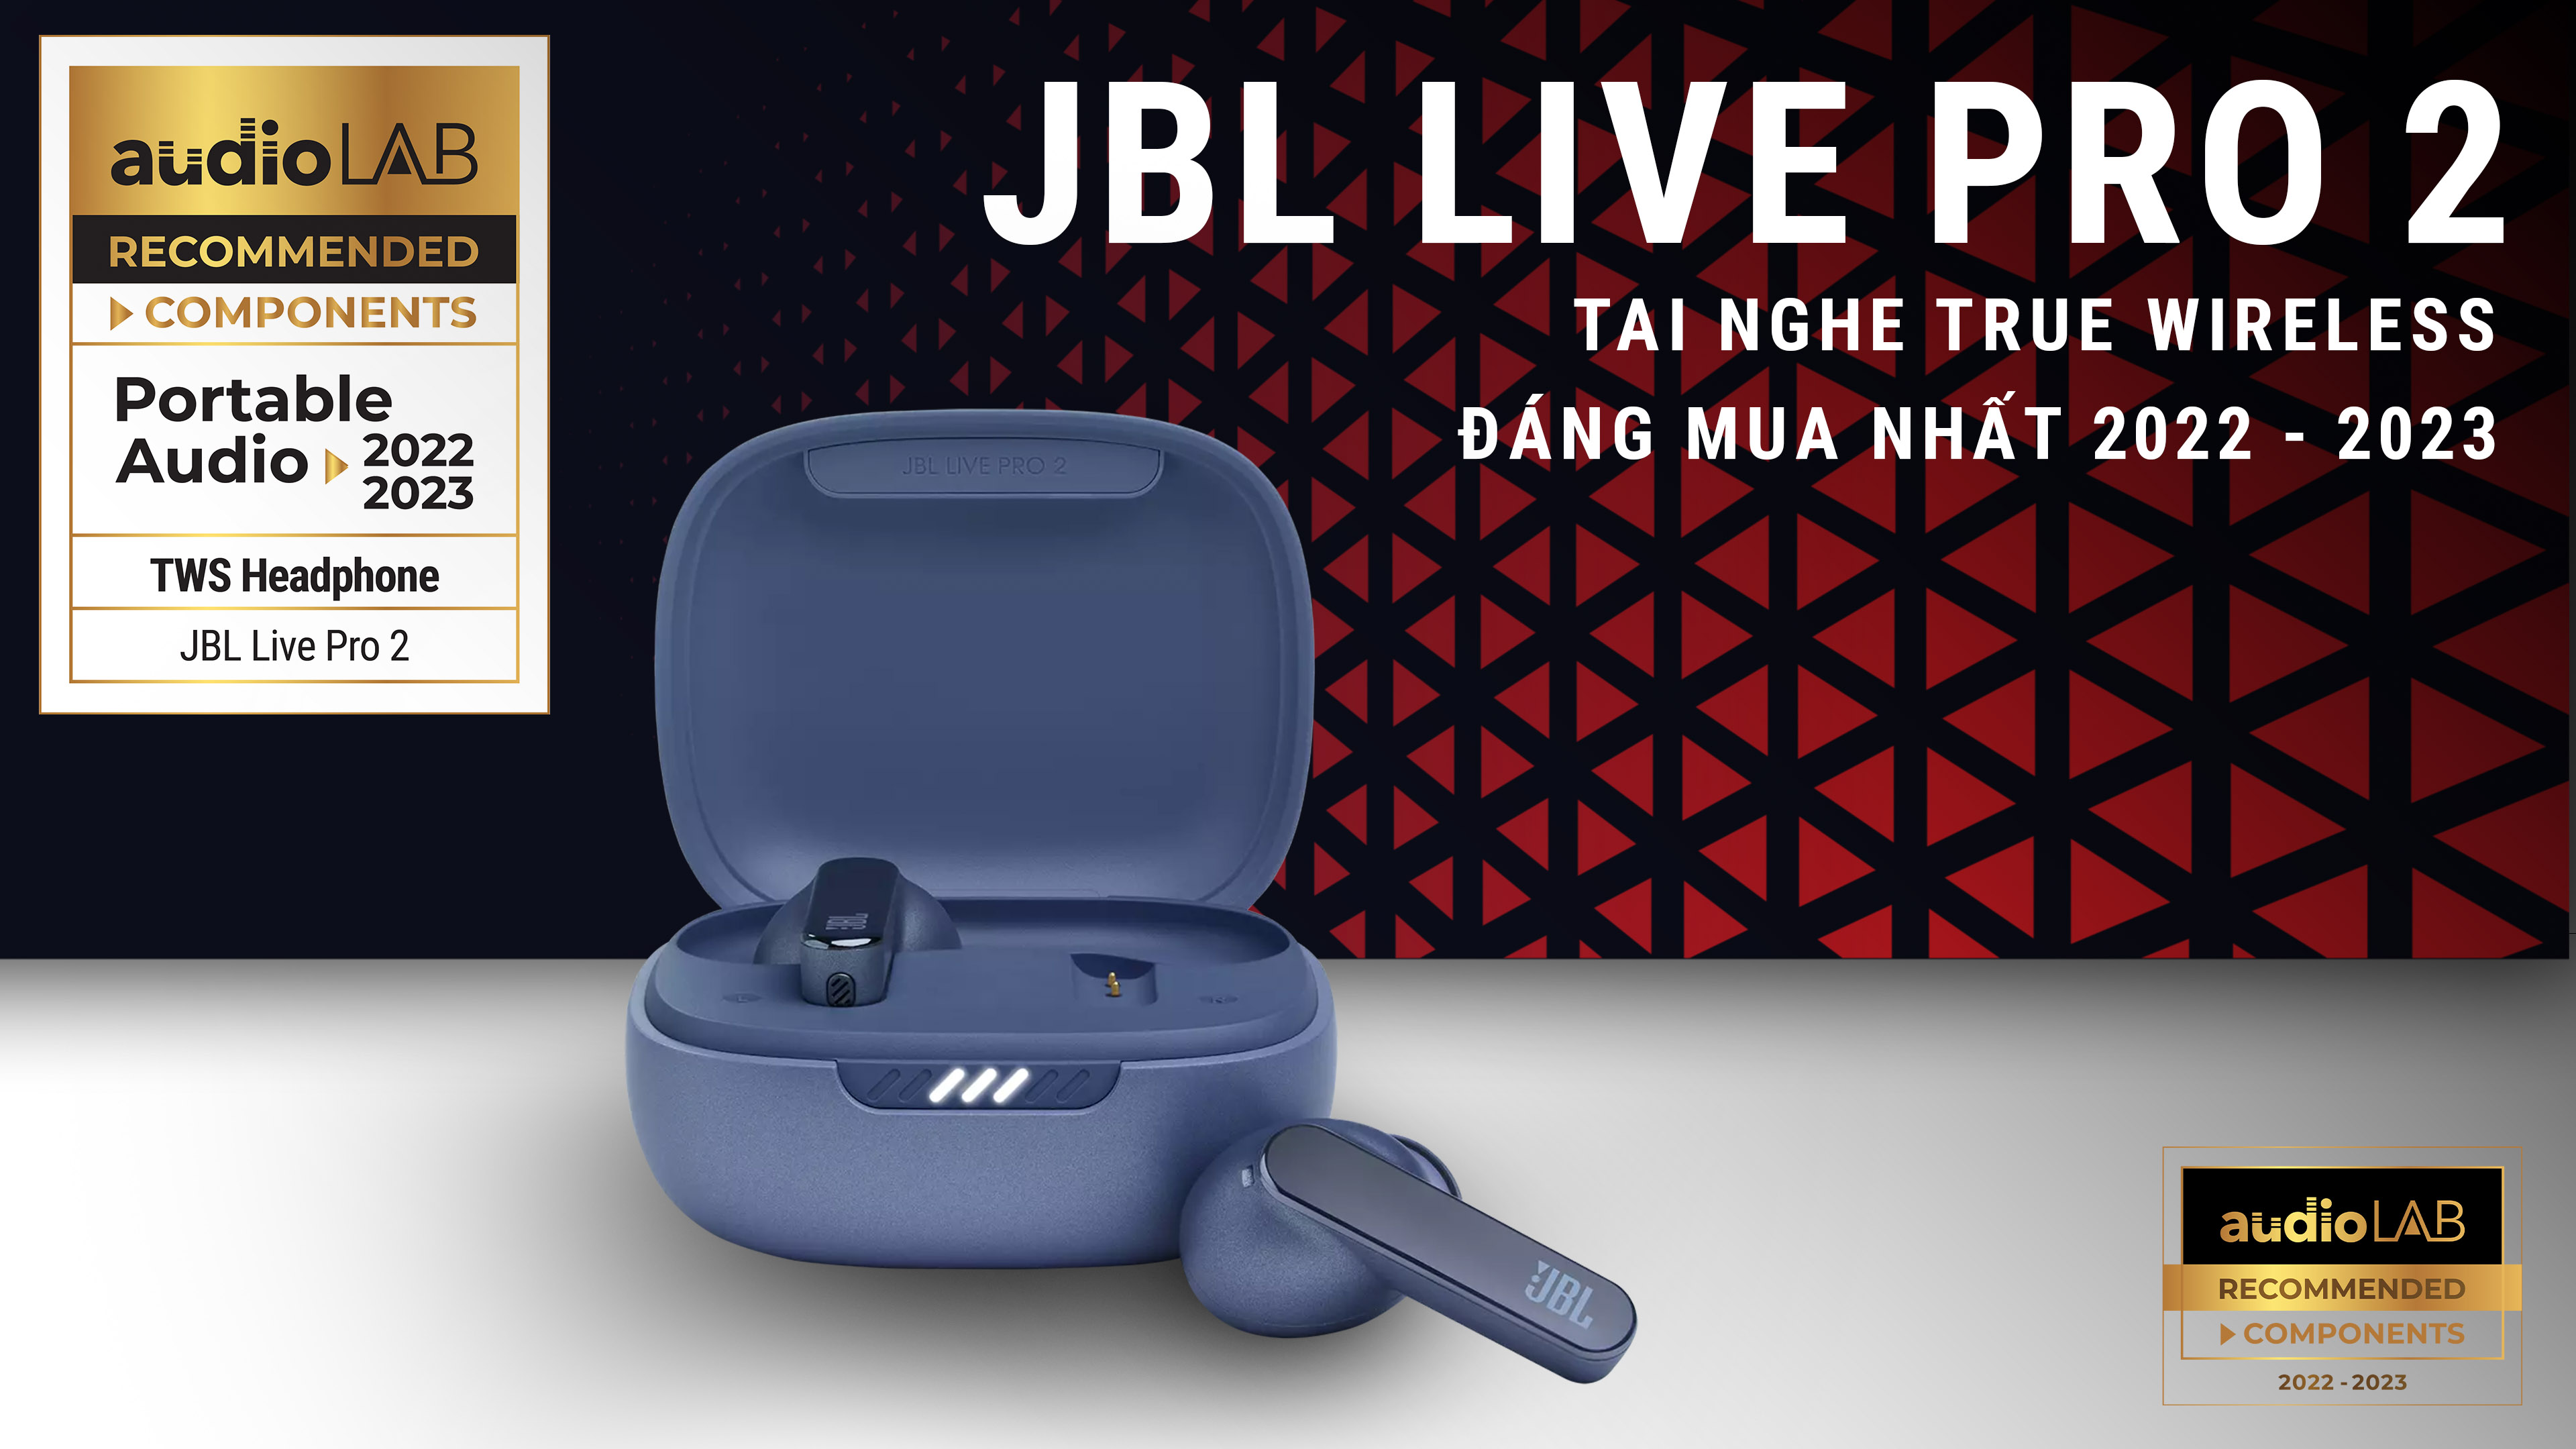 [Audio LAB Recommended] JBL Live Pro 2 - Tai nghe true wireless đáng sở hữu nhất năm 2022 - 2023